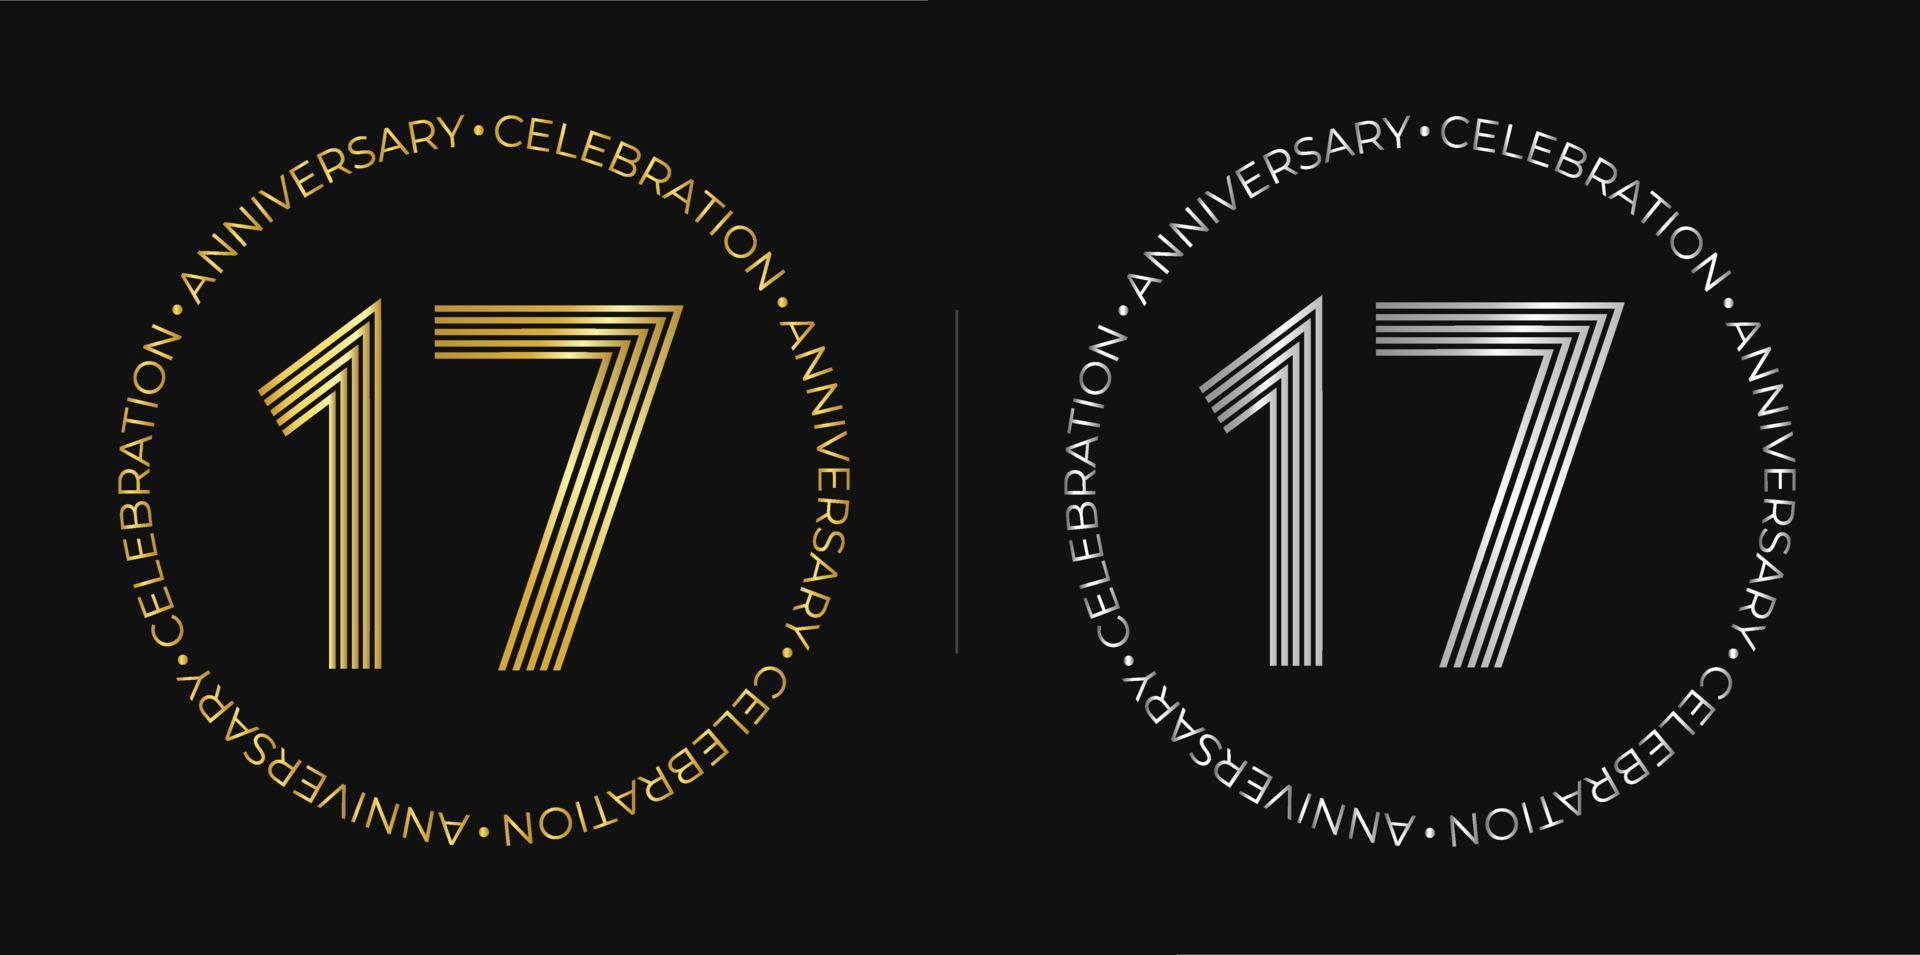 17. Geburtstag. siebzehn Jahre Jubiläumsfeier Banner in goldenen und silbernen Farben. kreisförmiges Logo mit originellem Zahlendesign in eleganten Linien. vektor